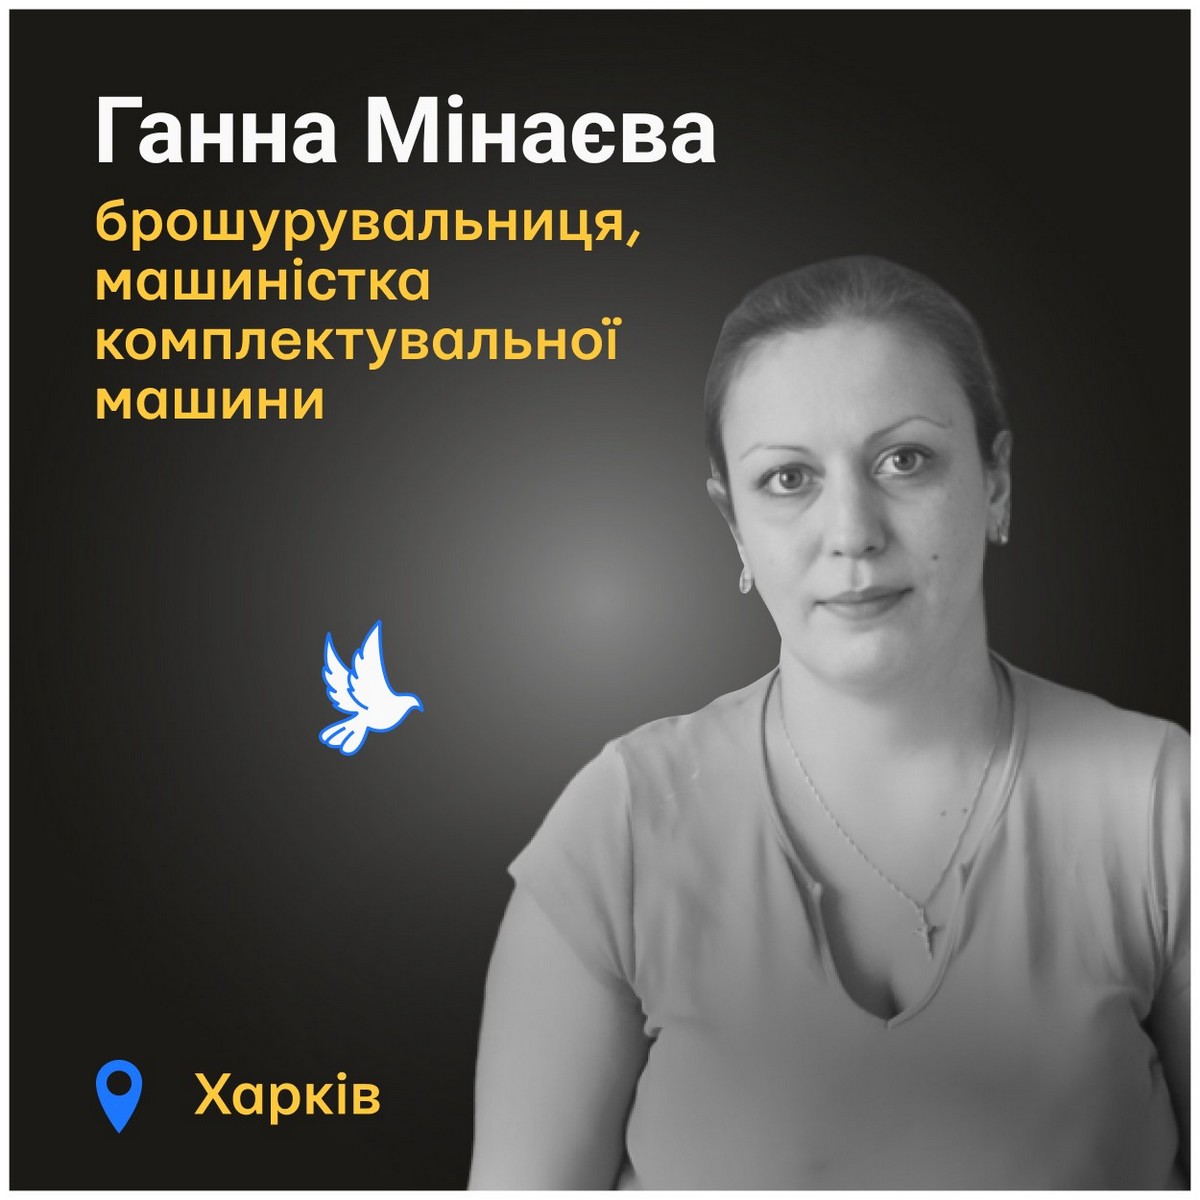 Меморіал: вбиті росією. Ганна Мінаєва, 40 років, Харків, травень